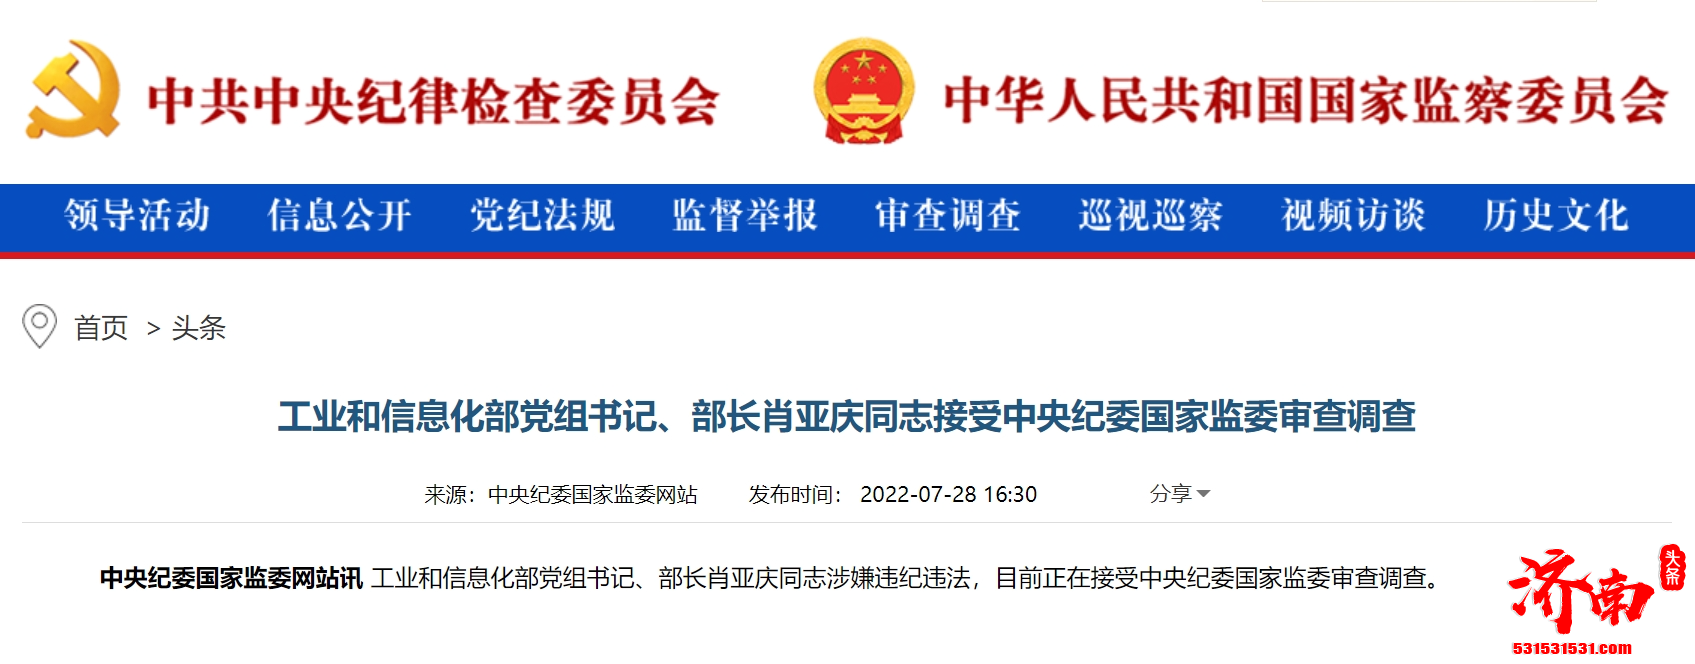 工业和信息化部长肖亚庆同志涉嫌违纪违法被查 无缘二十大代表